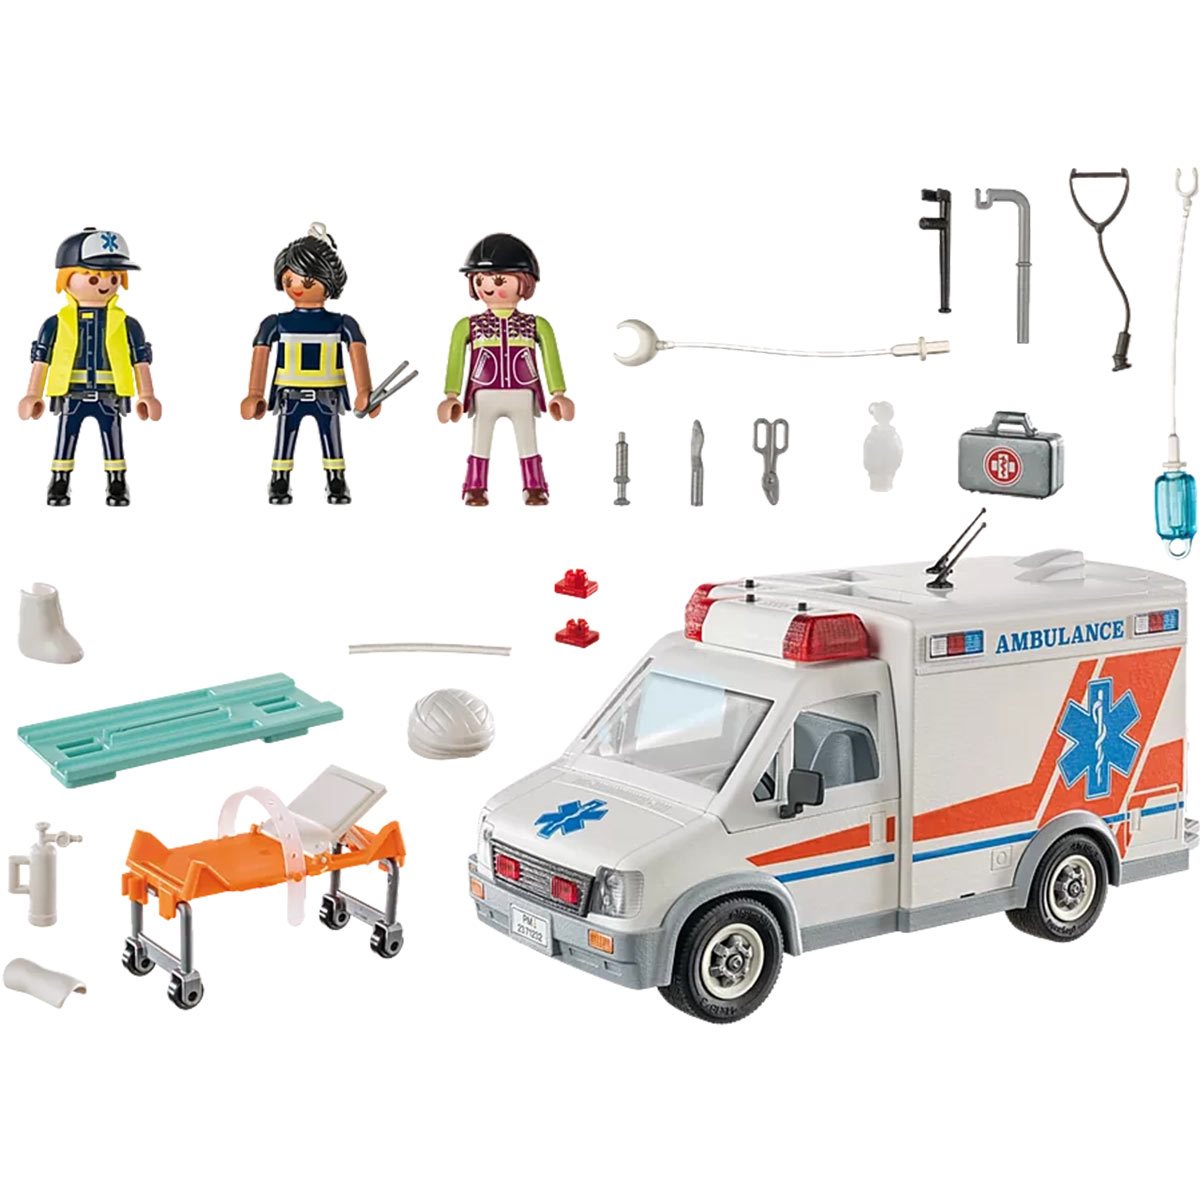 71232 Ambulance - Entertainment Earth